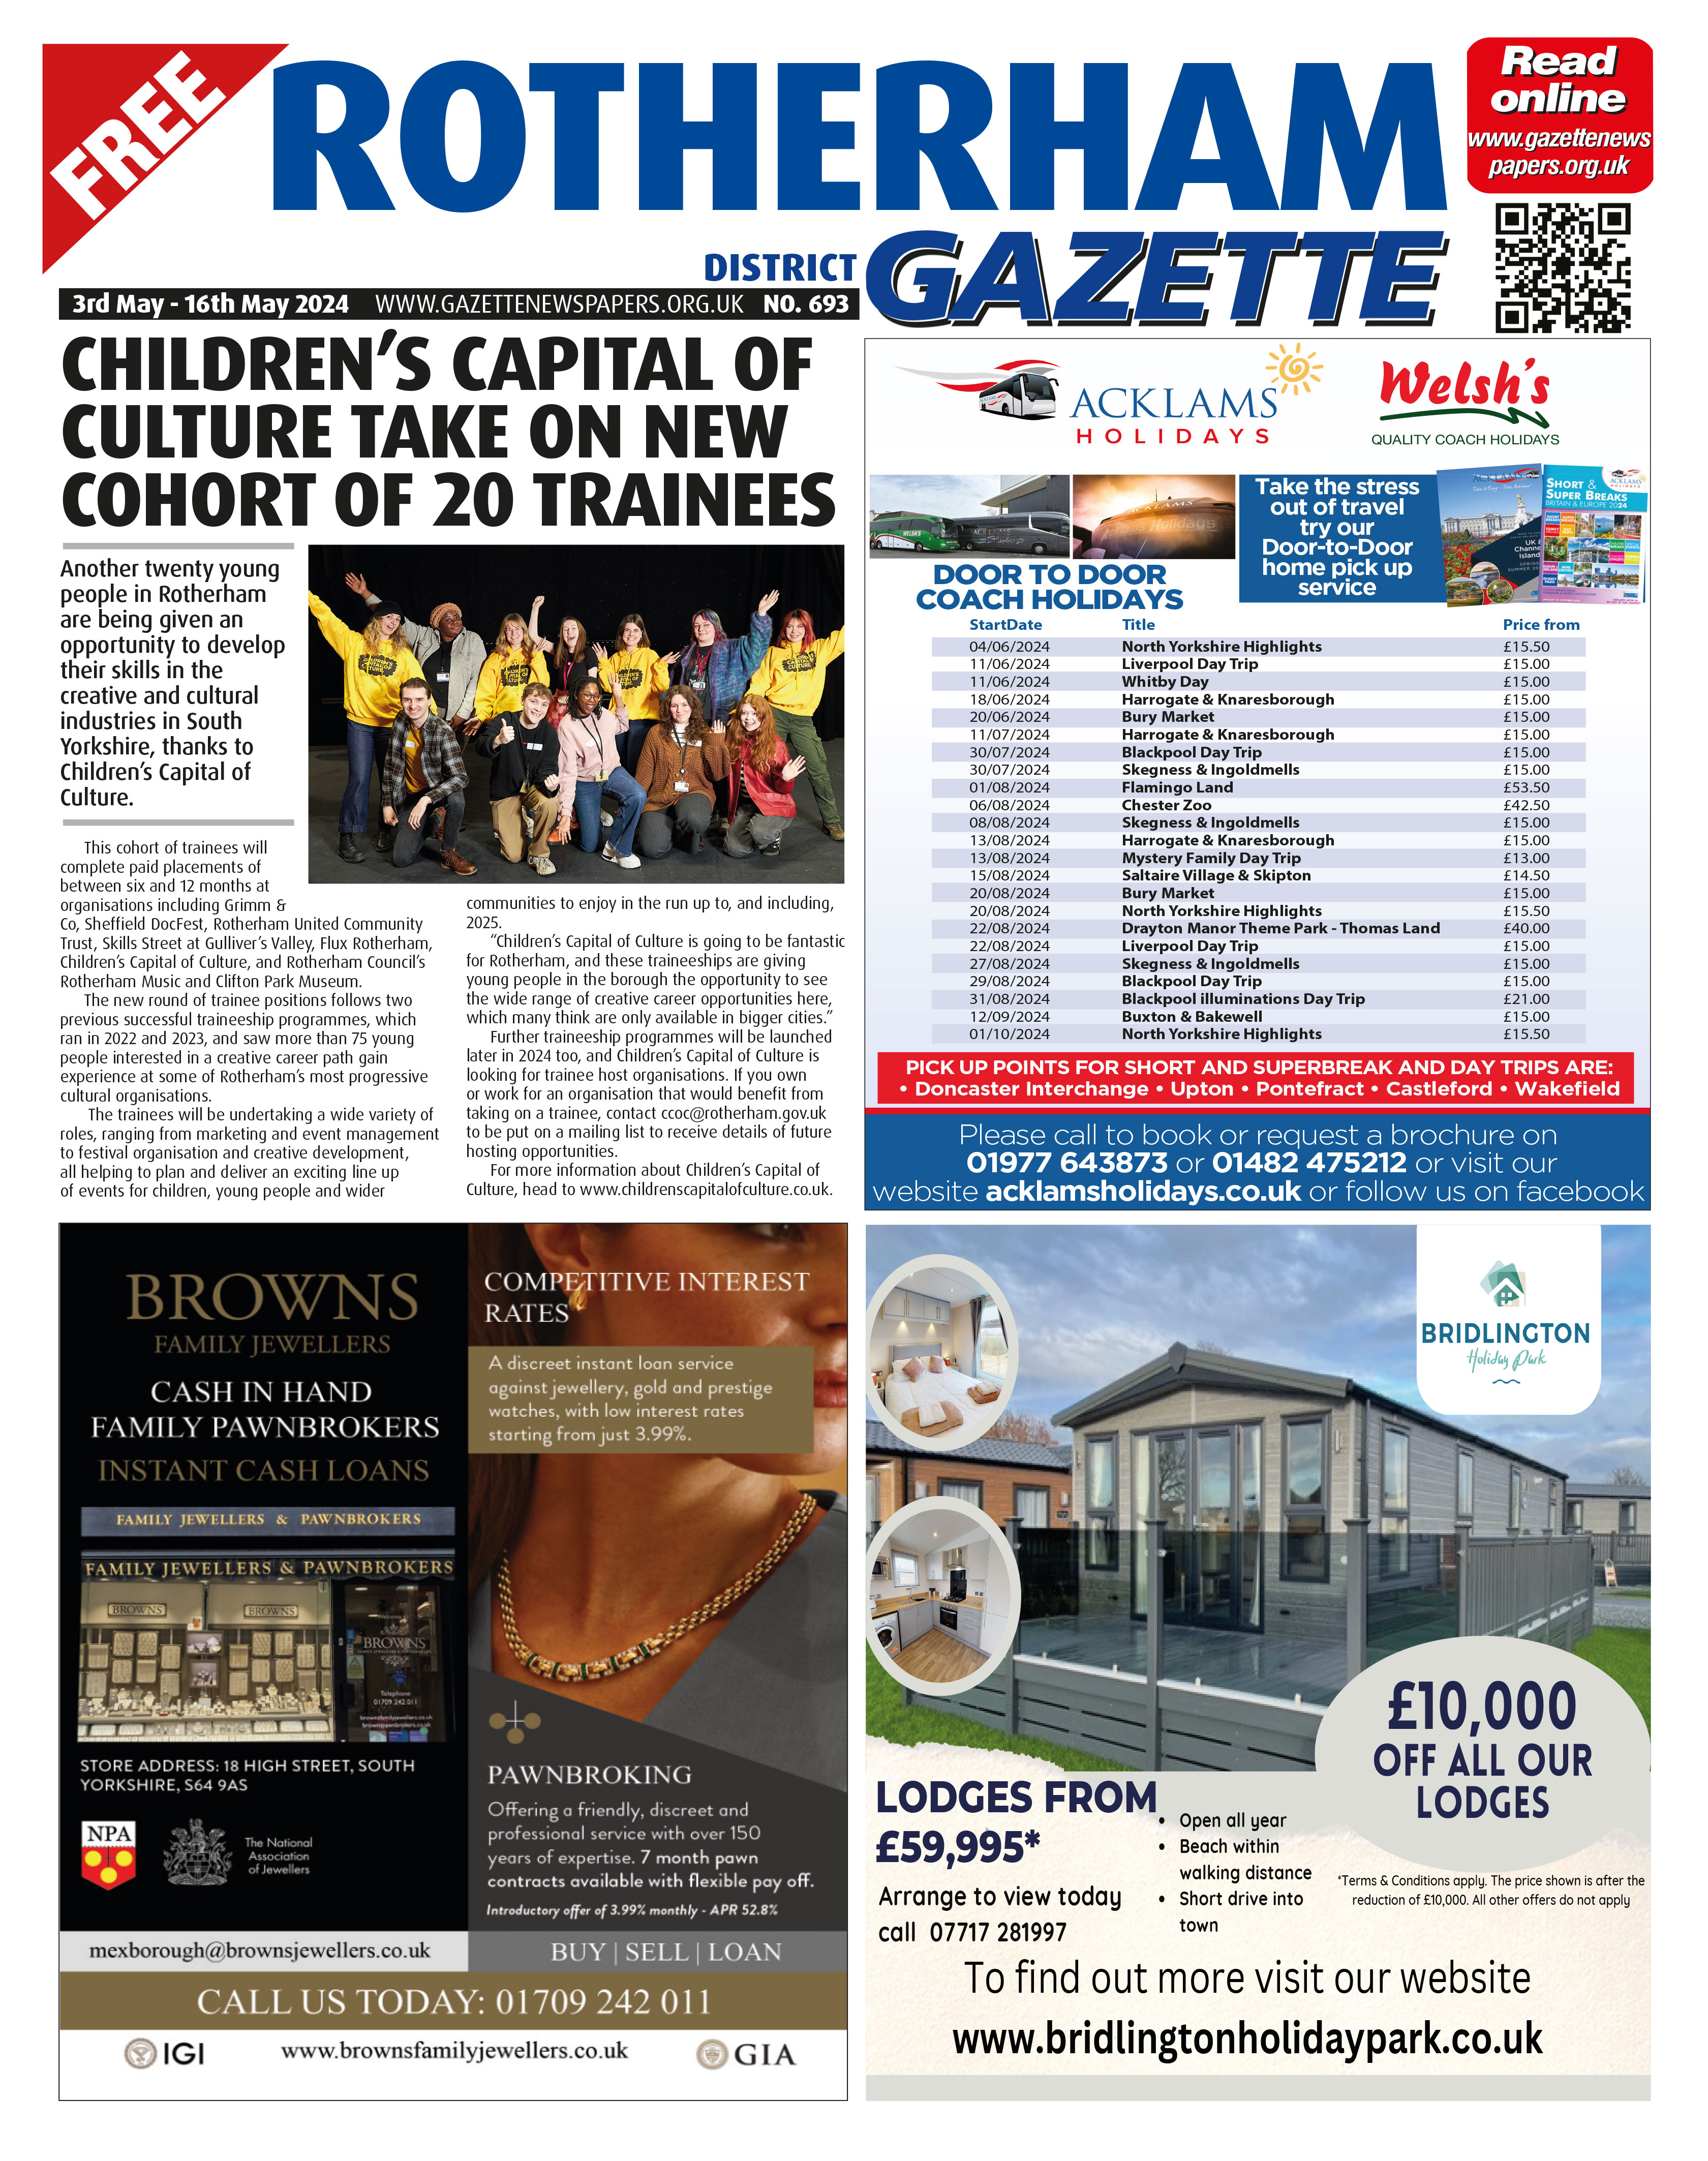 Rotherham District Gazette